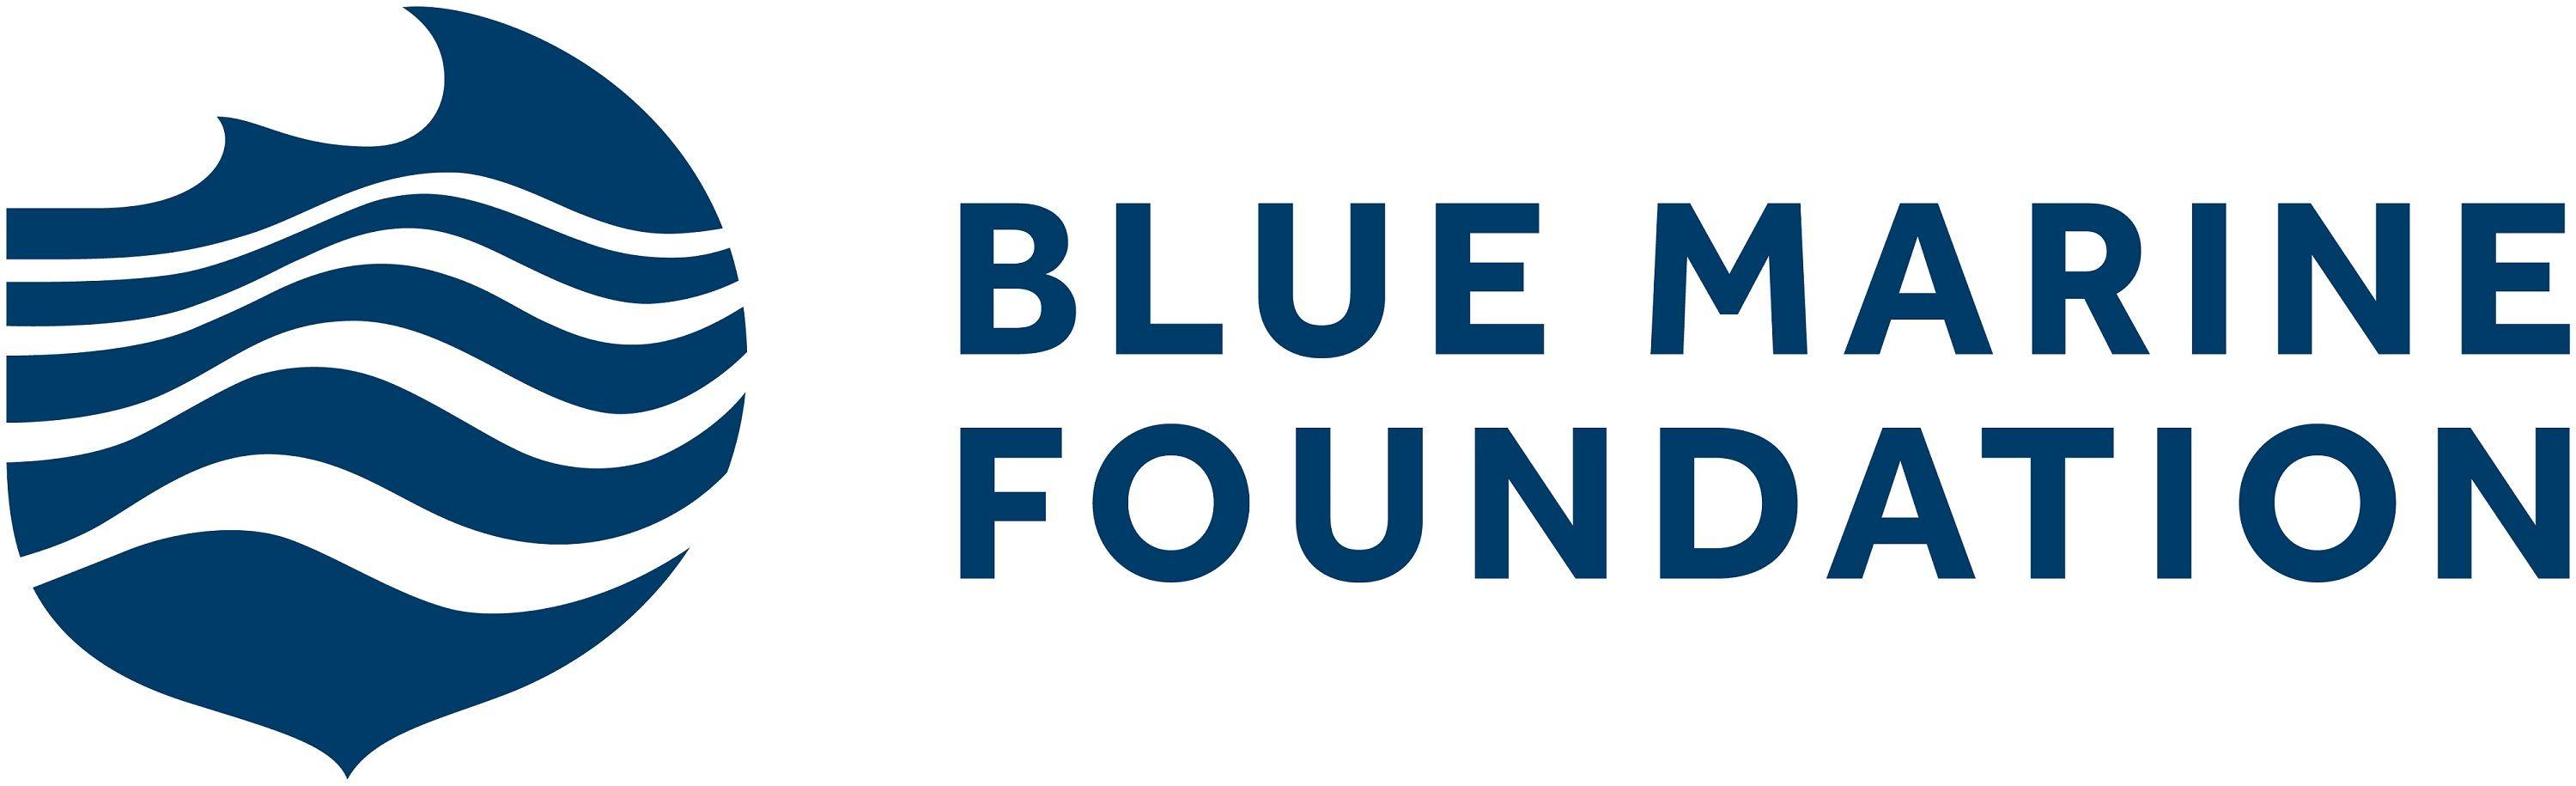 BMF Logo - BMF Logo 2 RGBSMALL - Blue Marine Foundation